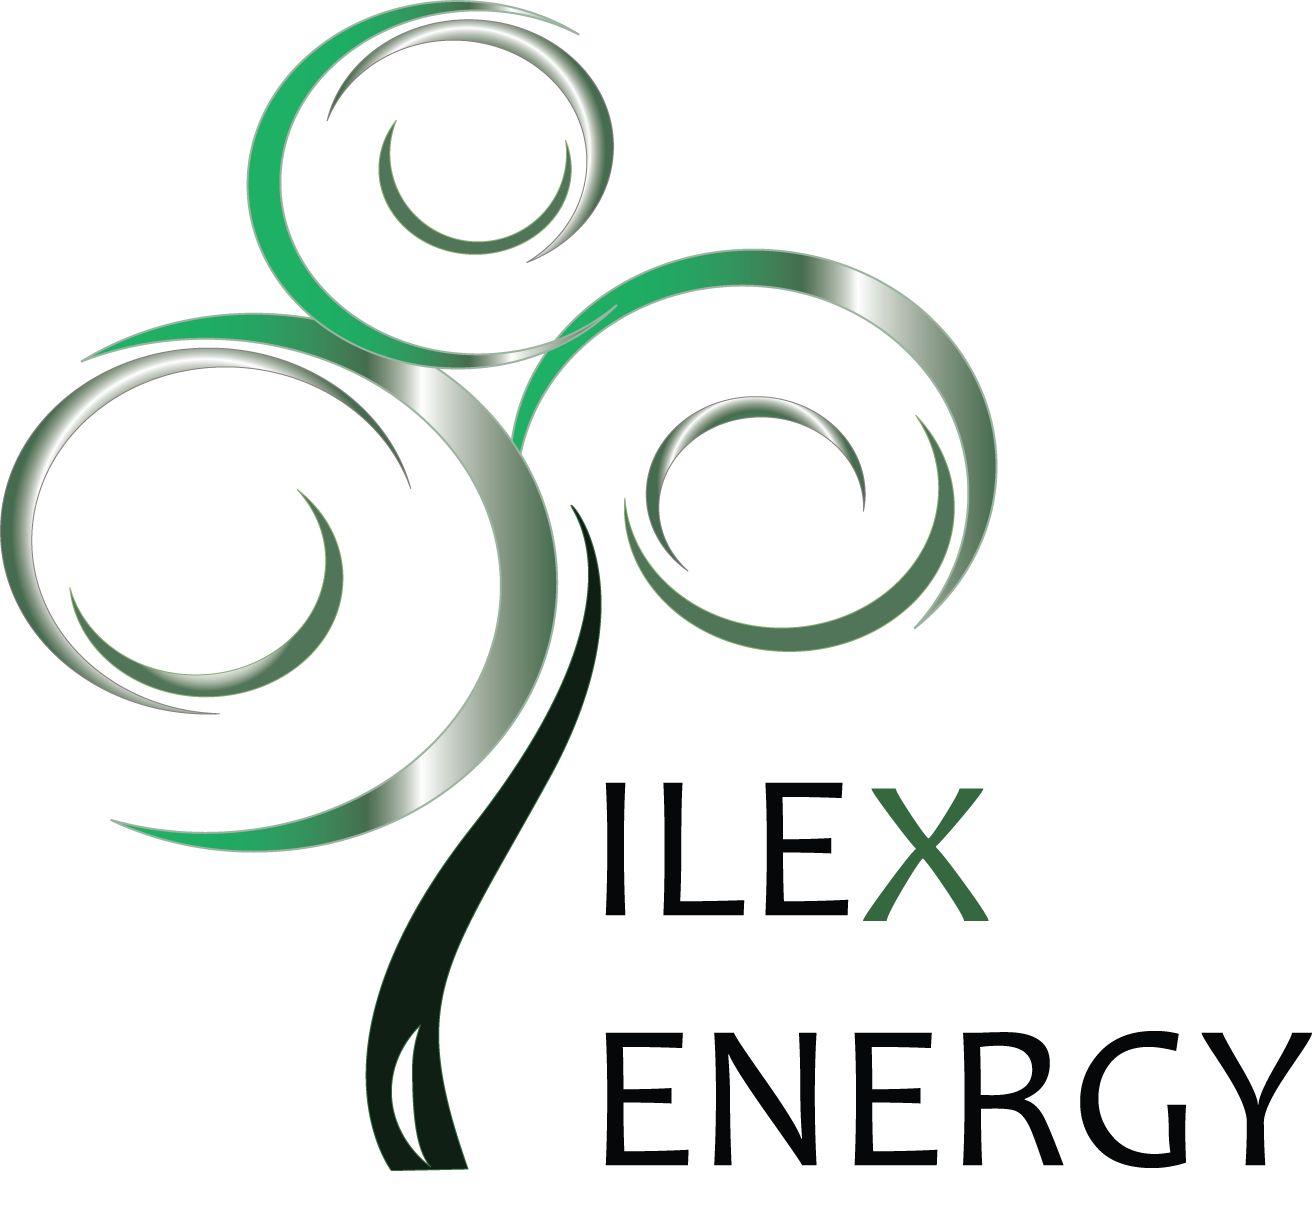 ILEX ENERGY